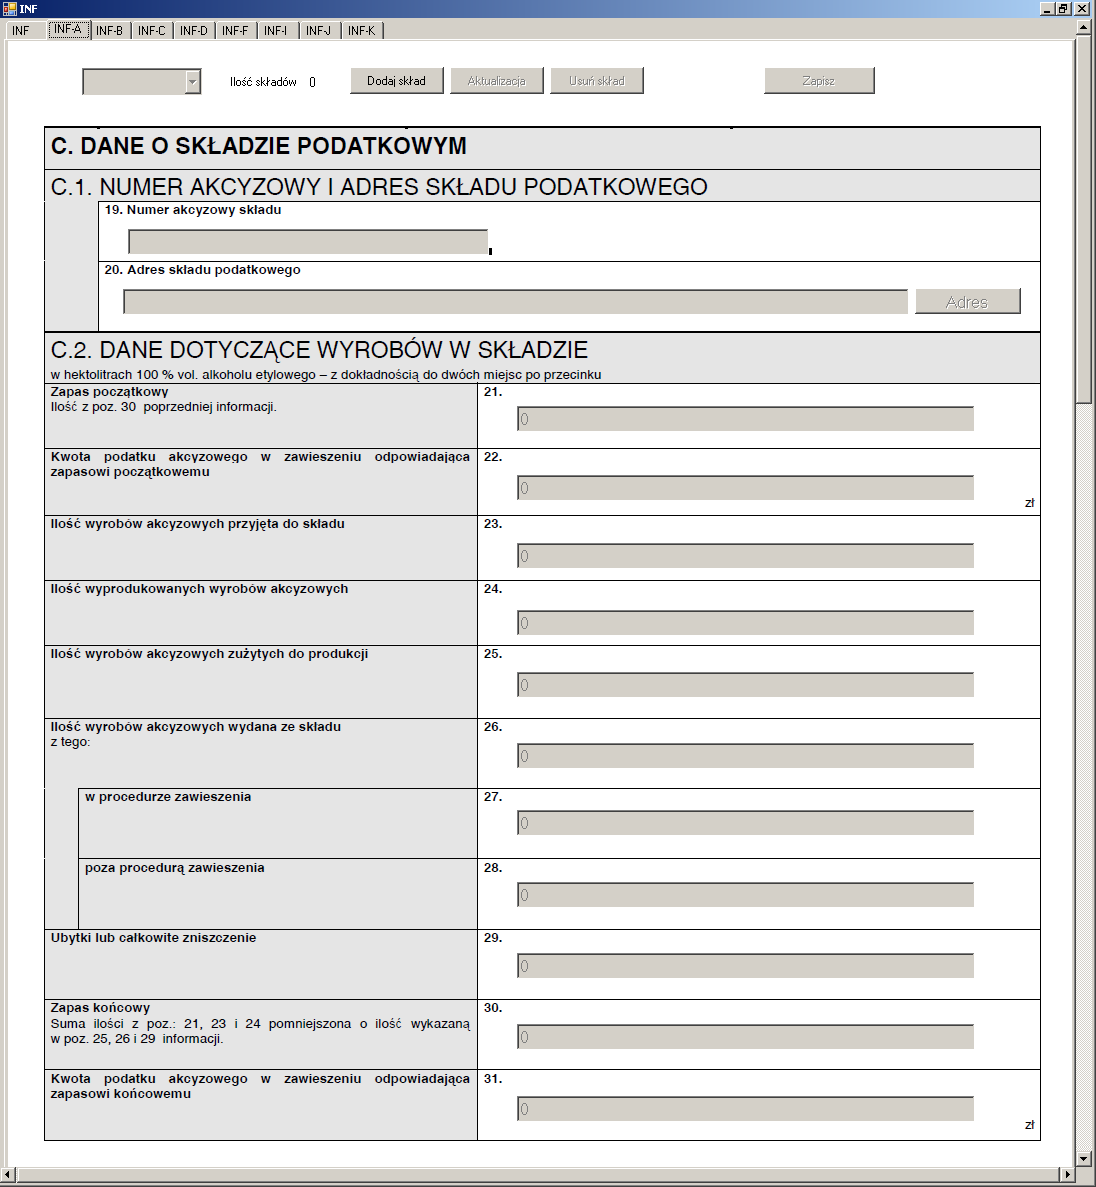 Pojawi się formularz podobny do przedstawionego na poniższym ekranie: PrtSc 41- wyliczanie kwoty podatku Należy wypełnić odpowiednie pola formularza.